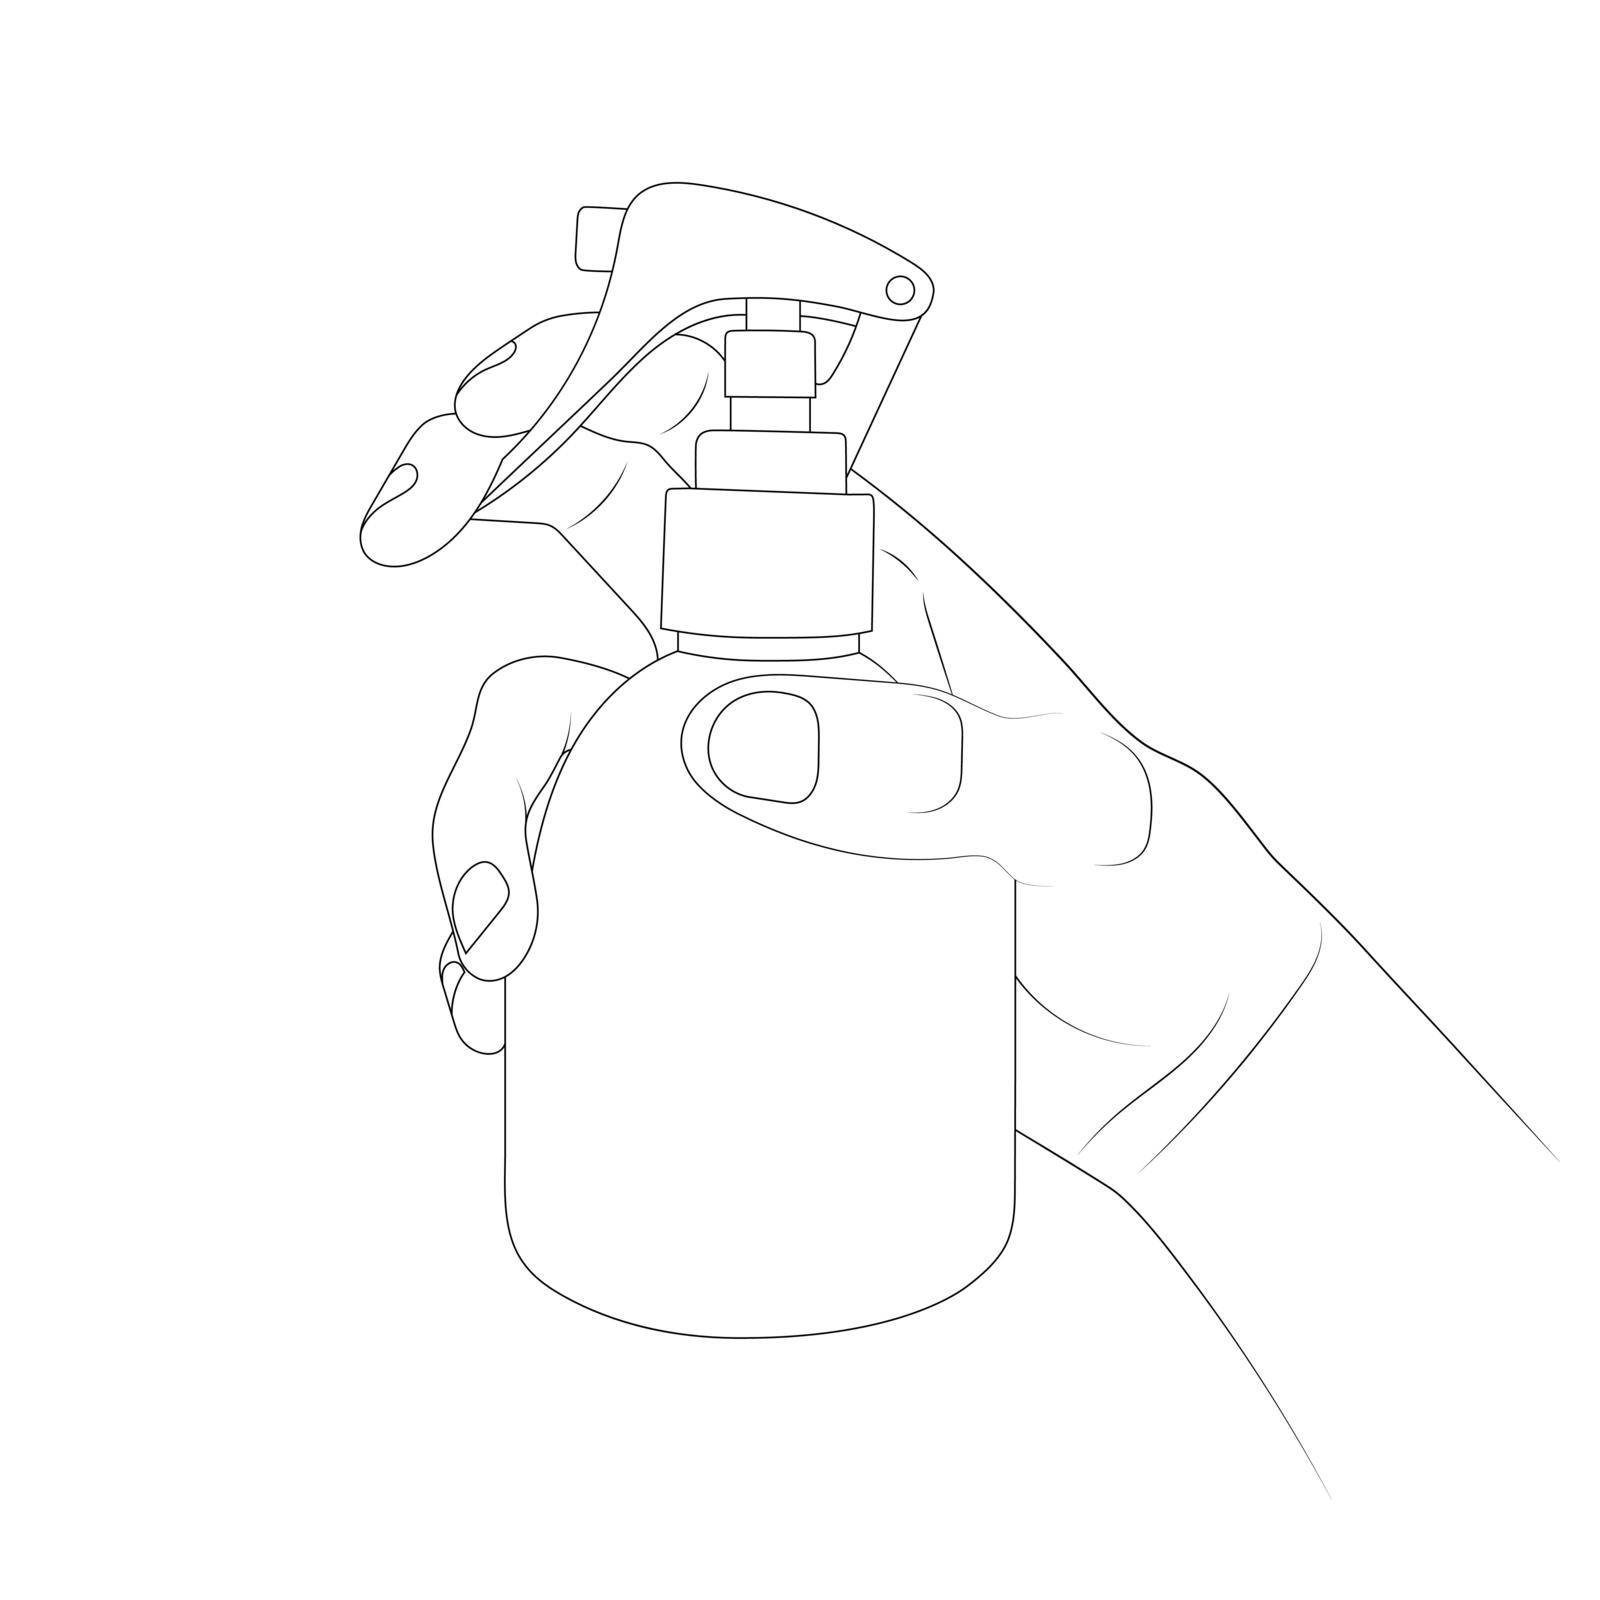 Spraying spray from a bottle sketch